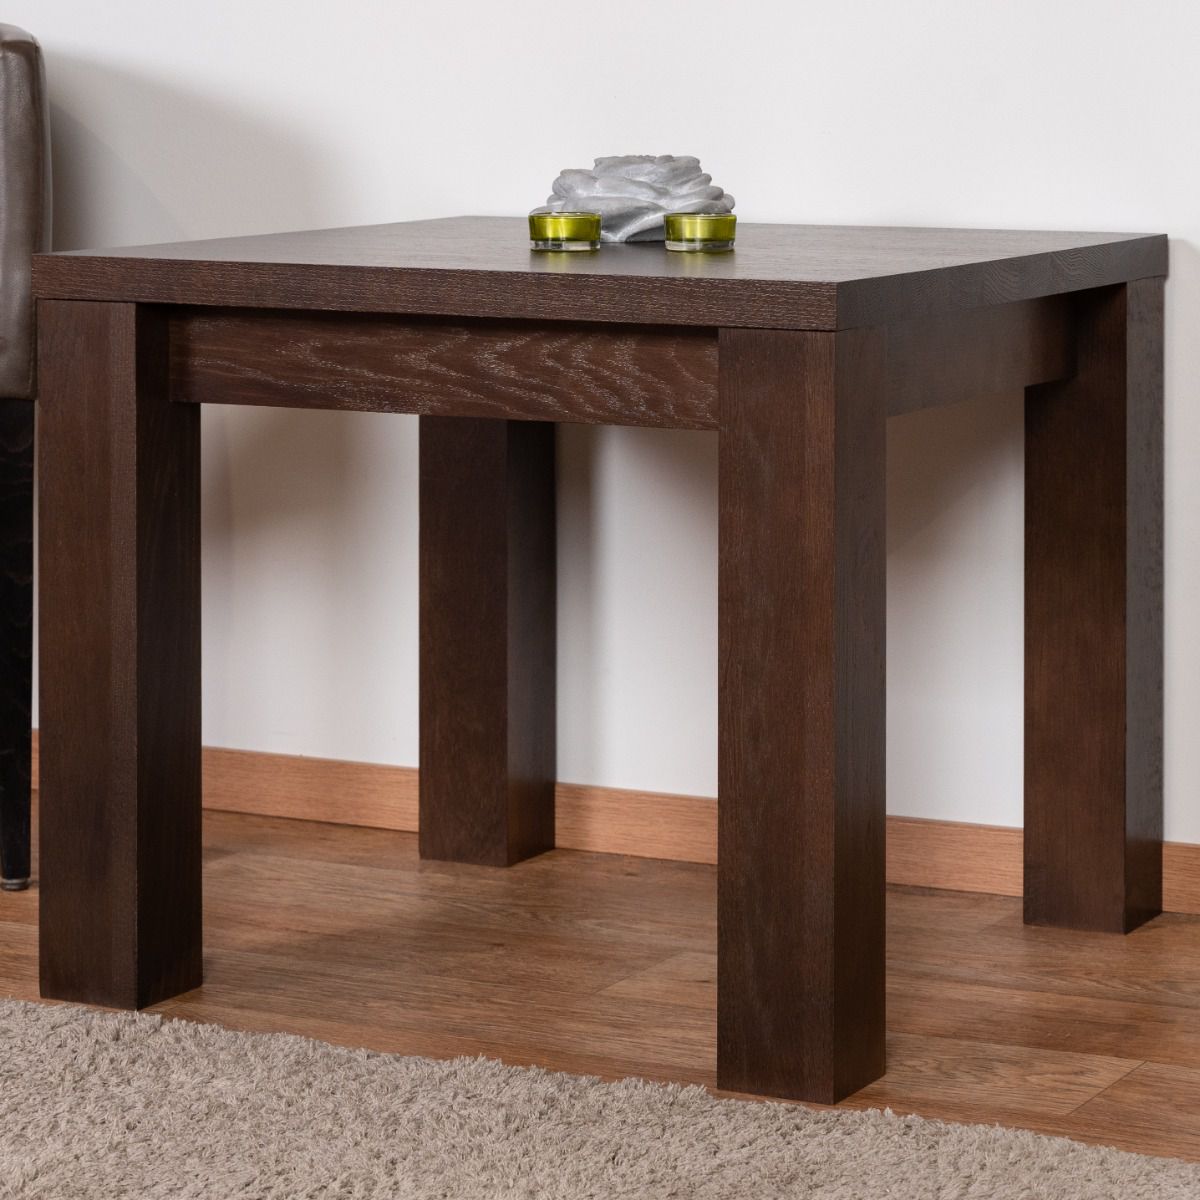 Tavolino robusto in rovere massiccio Pirol 119, color noce, 50 x 60 x 60 cm, resistente e stabile, facile da montare, alta qualità del legno